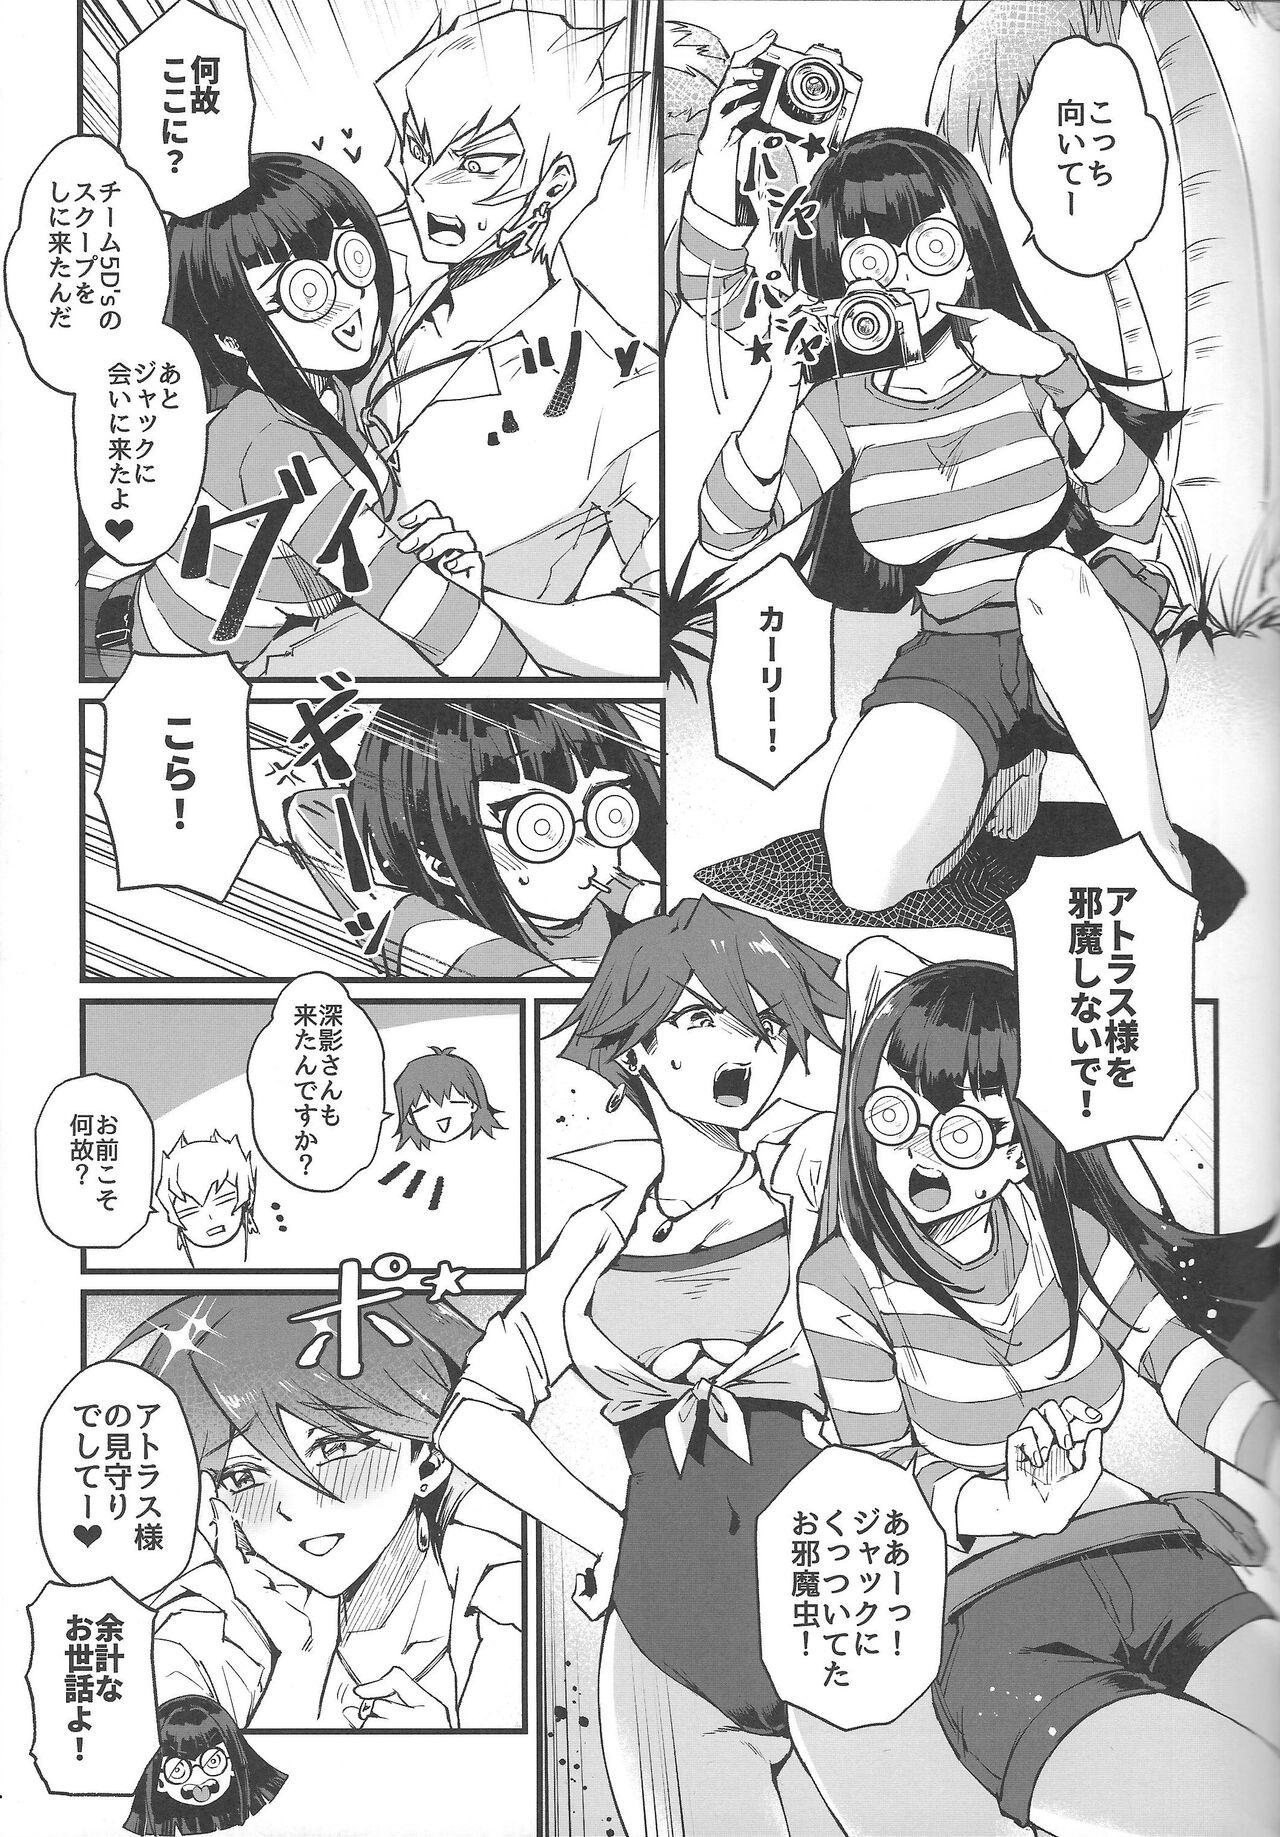 Monster Samakani - Yu gi oh 5ds Gaysex - Page 4